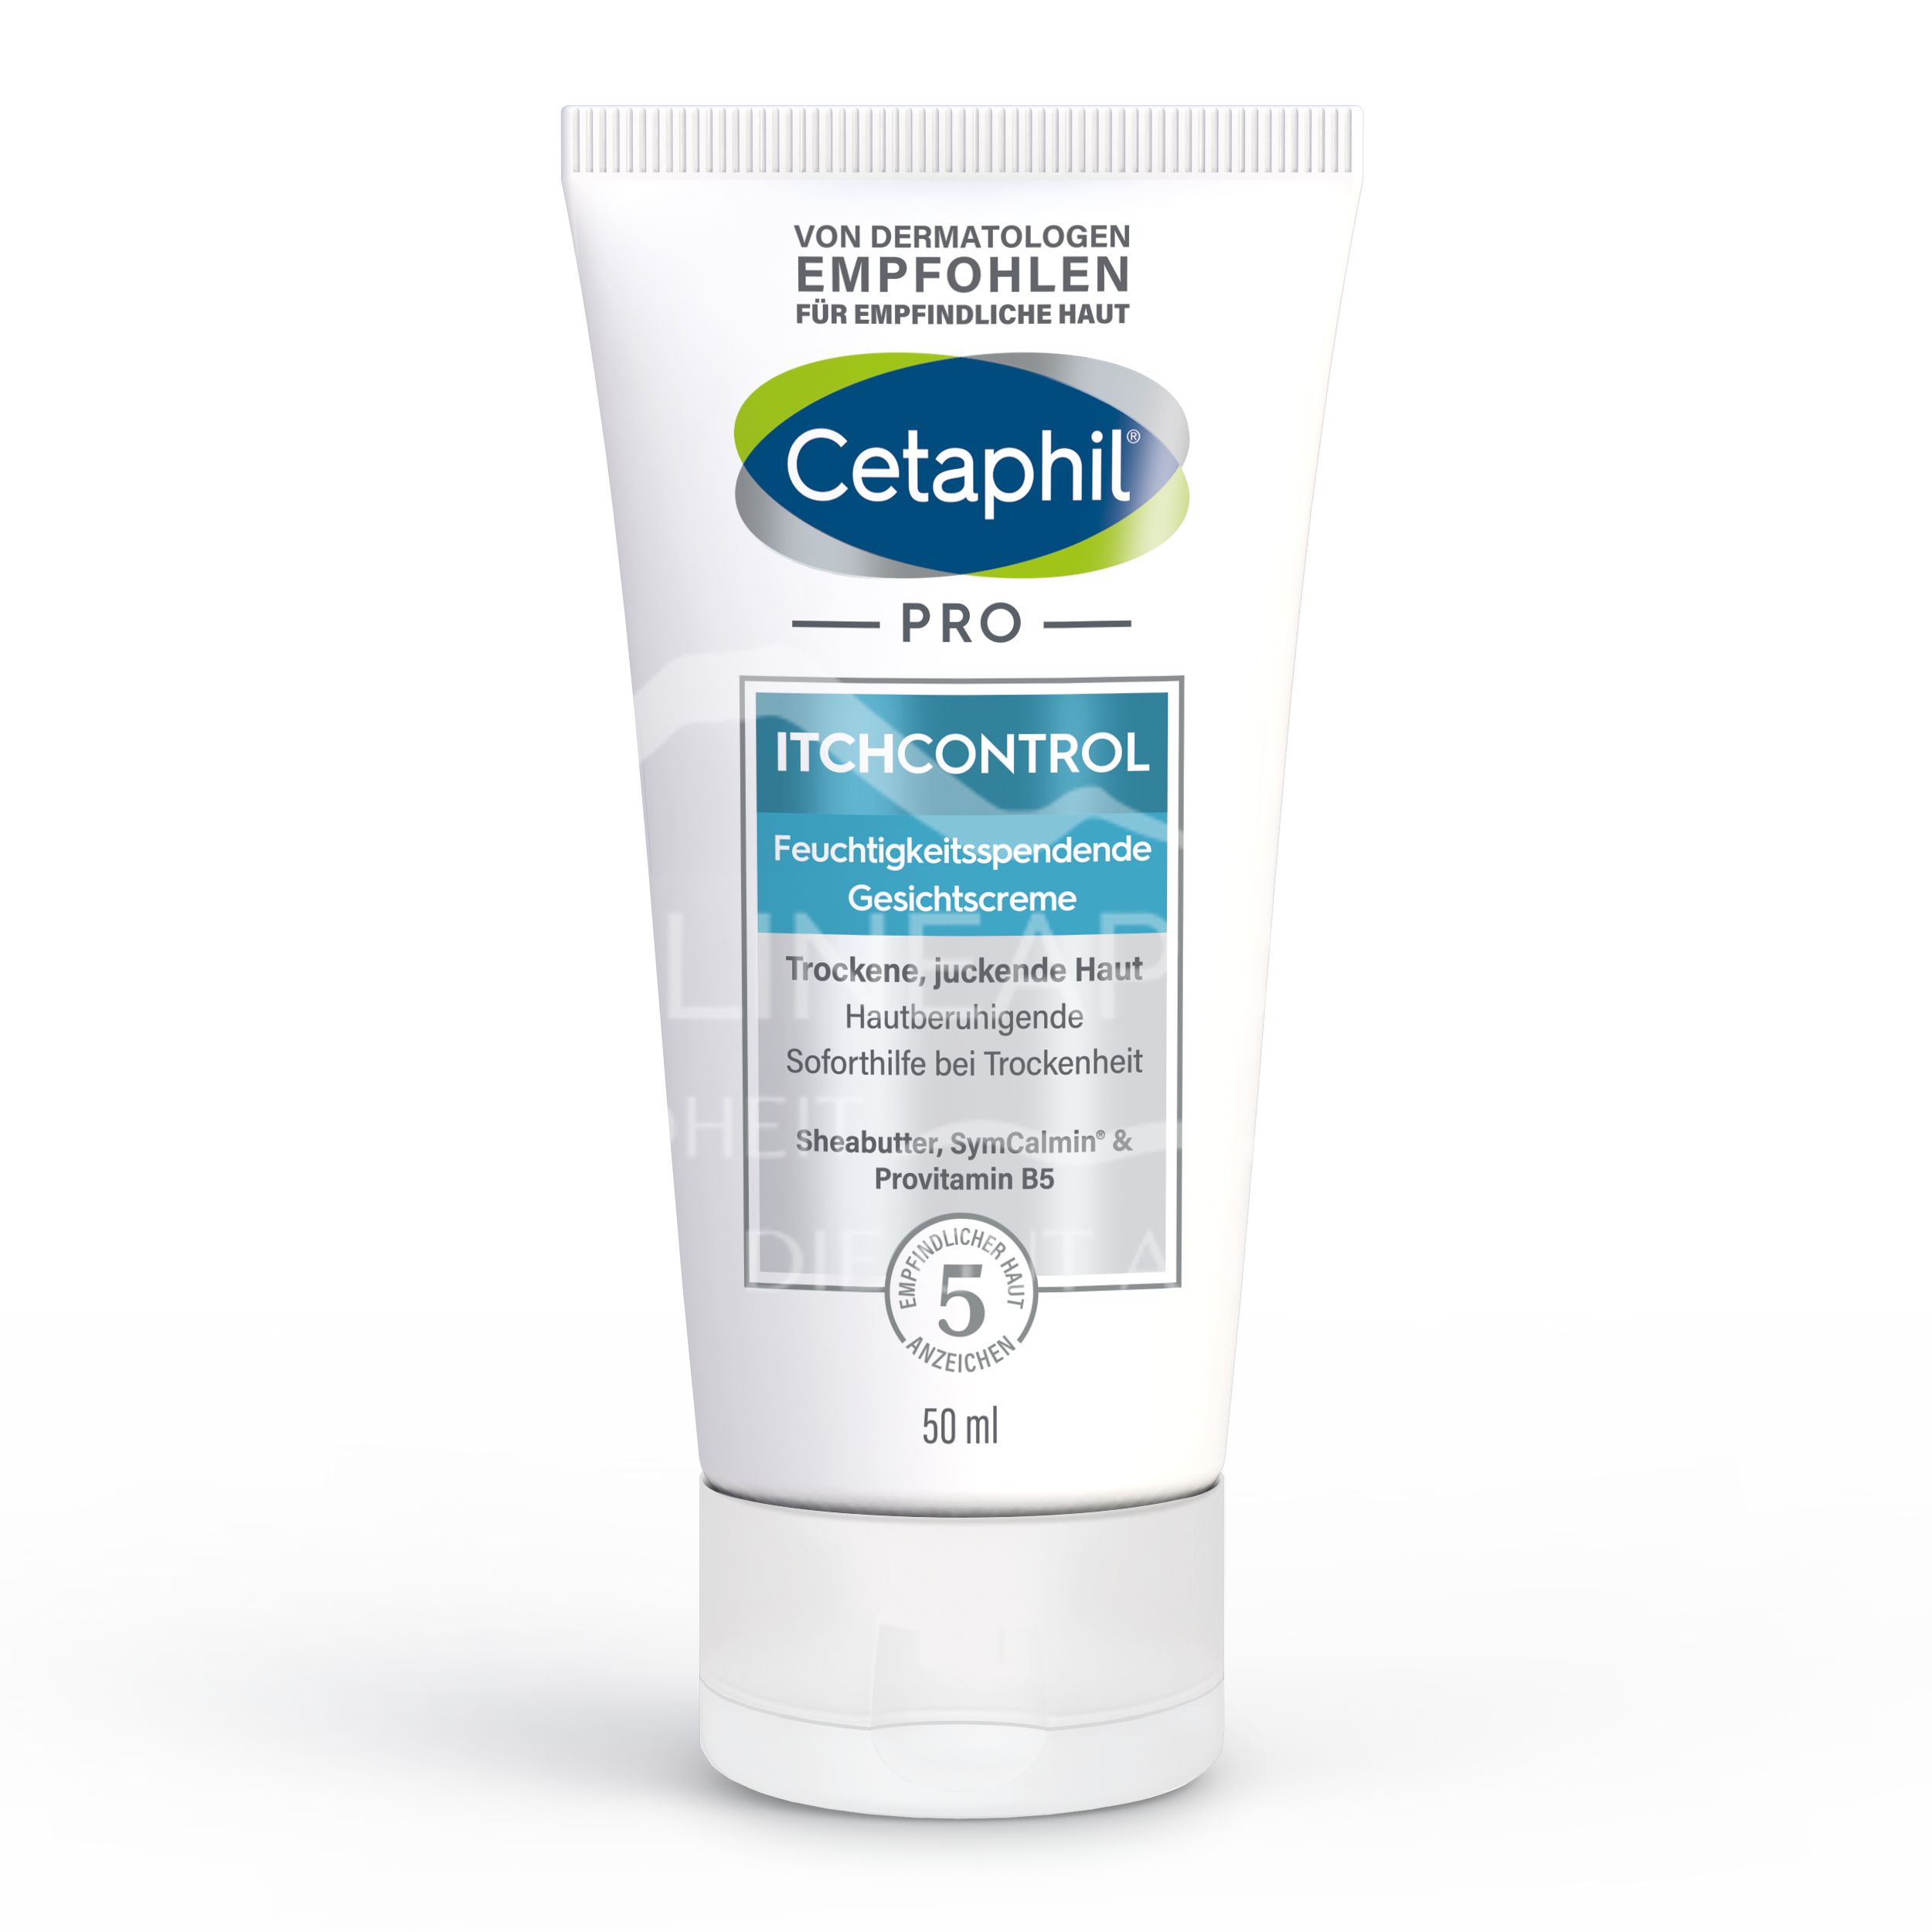 Cetaphil® PRO ItchControl Feuchtigkeitsspendende Gesichtscreme